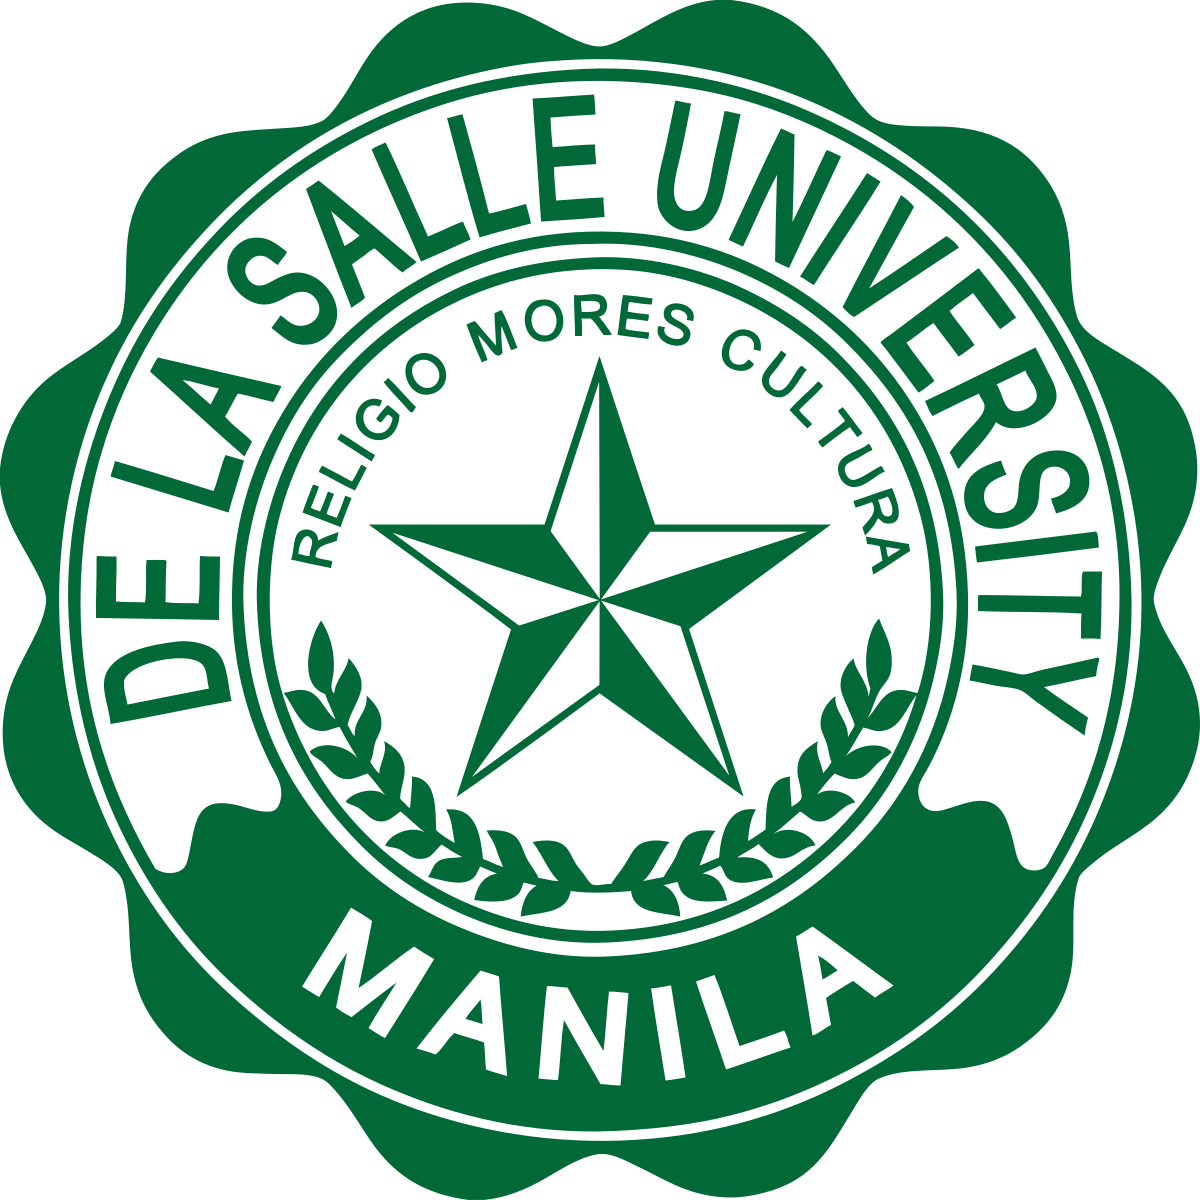 De La Salle - Official University Seal